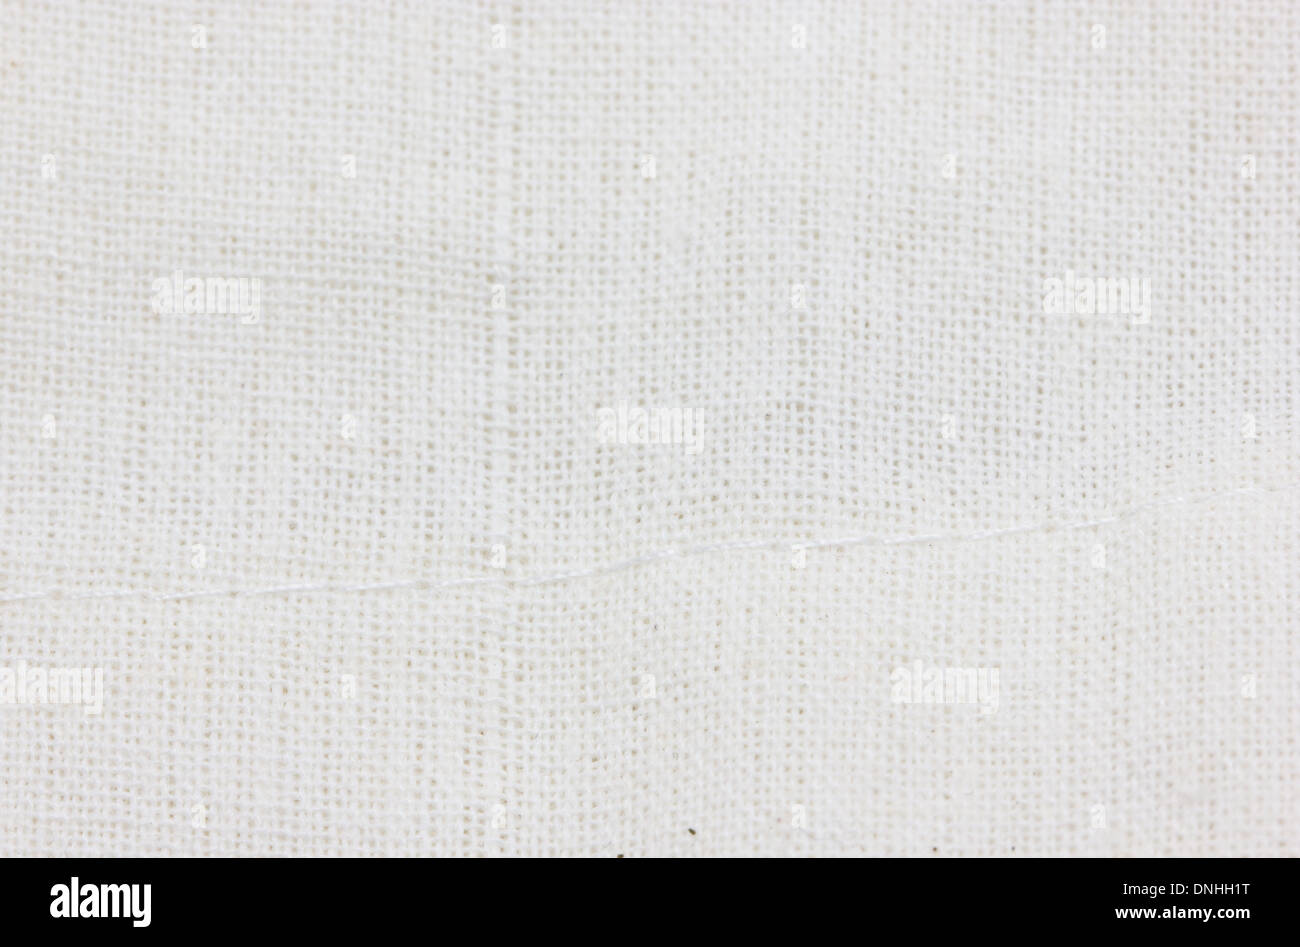 La tela blanca de fondo o textura Fotografía de stock - Alamy